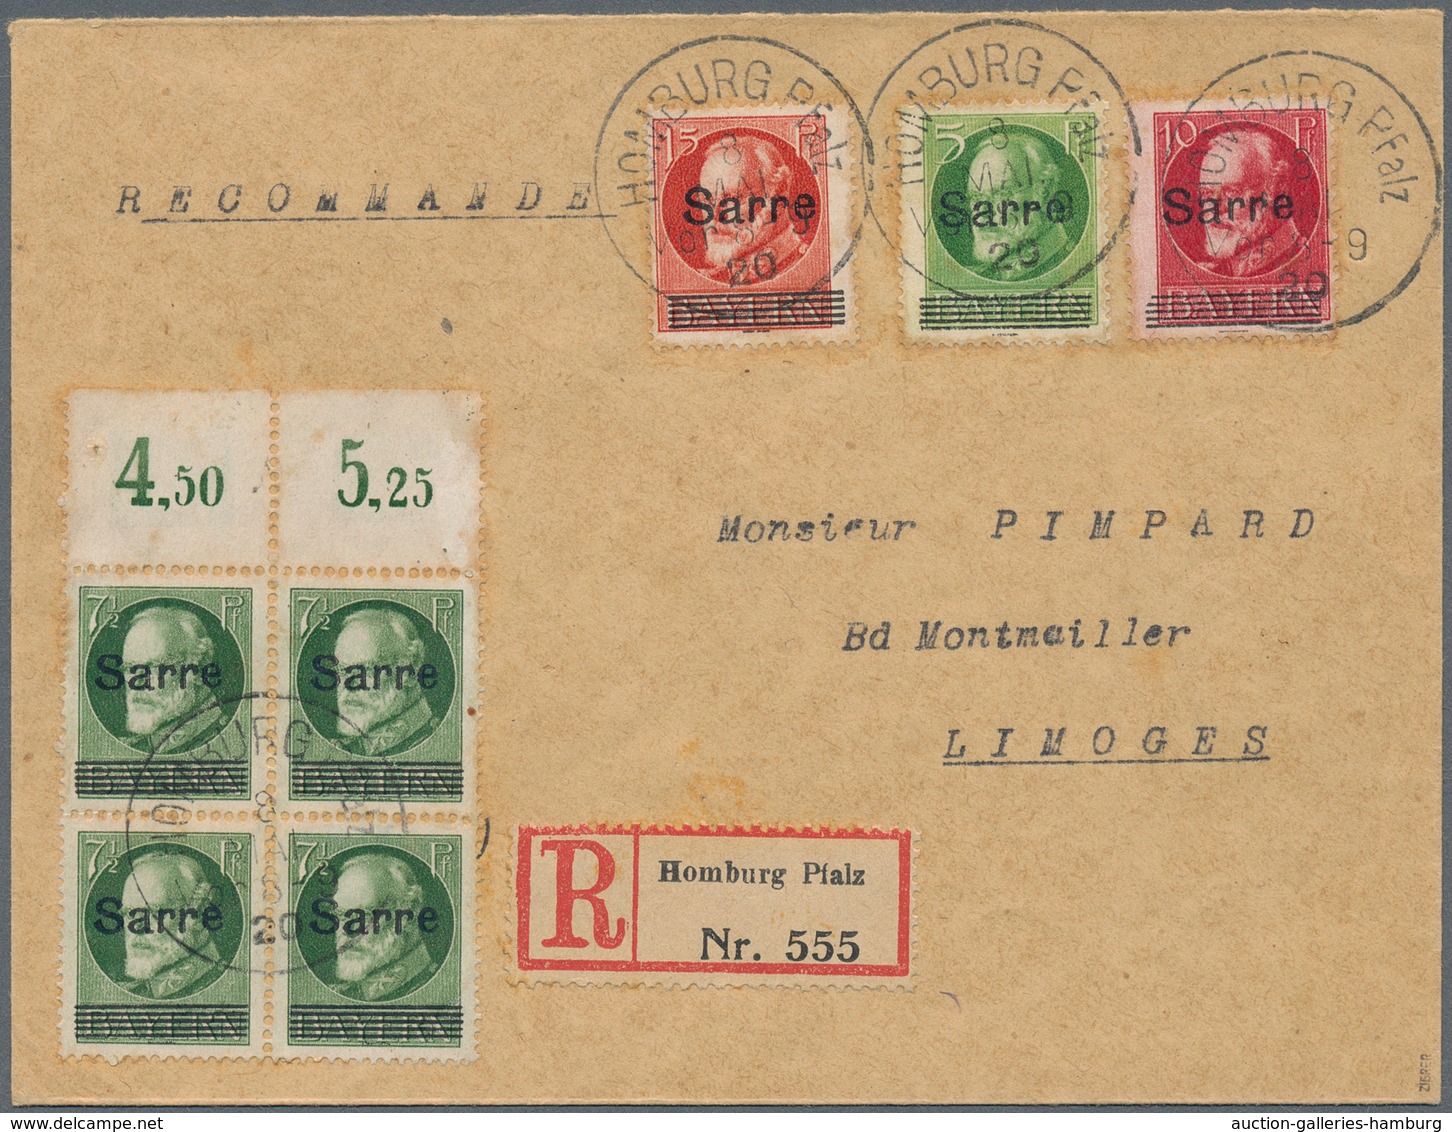 Deutsche Abstimmungsgebiete: Saargebiet: 1920, Bayern-Sarre, 7½ Pfg. Grün, Nicht über Die Postschalt - Covers & Documents